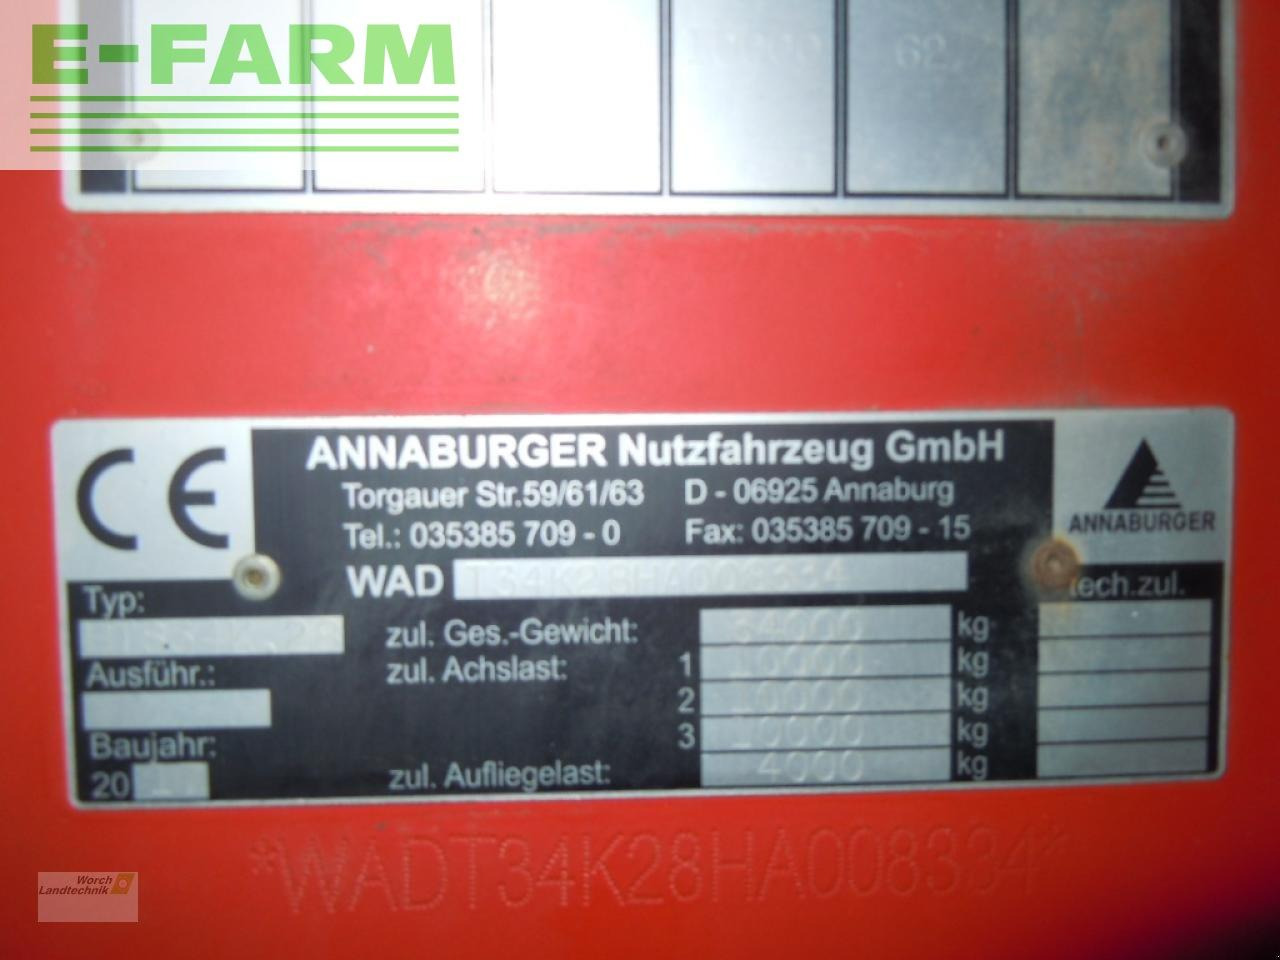 Cisterna za gnojnicu Annaburger hts 34 k28: slika Cisterna za gnojnicu Annaburger hts 34 k28